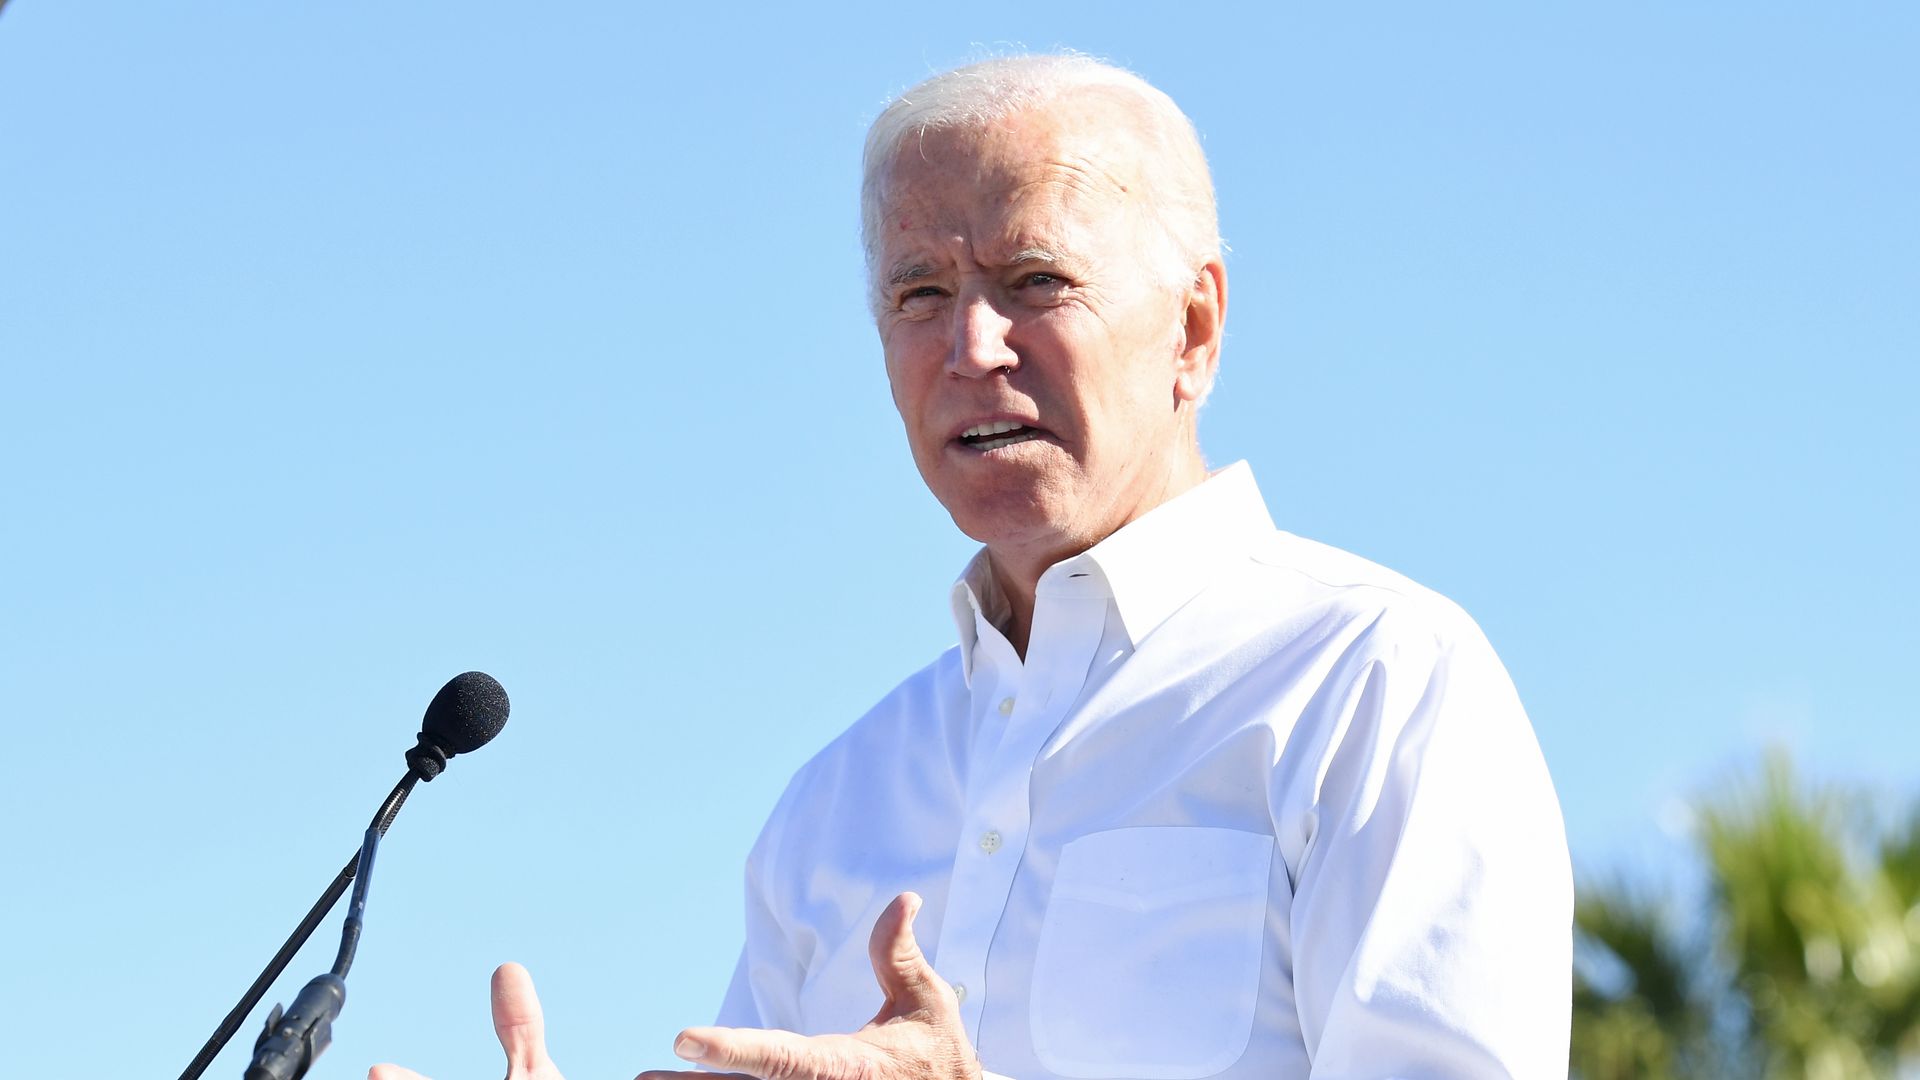 Former Vice President Joe Biden giving a speech